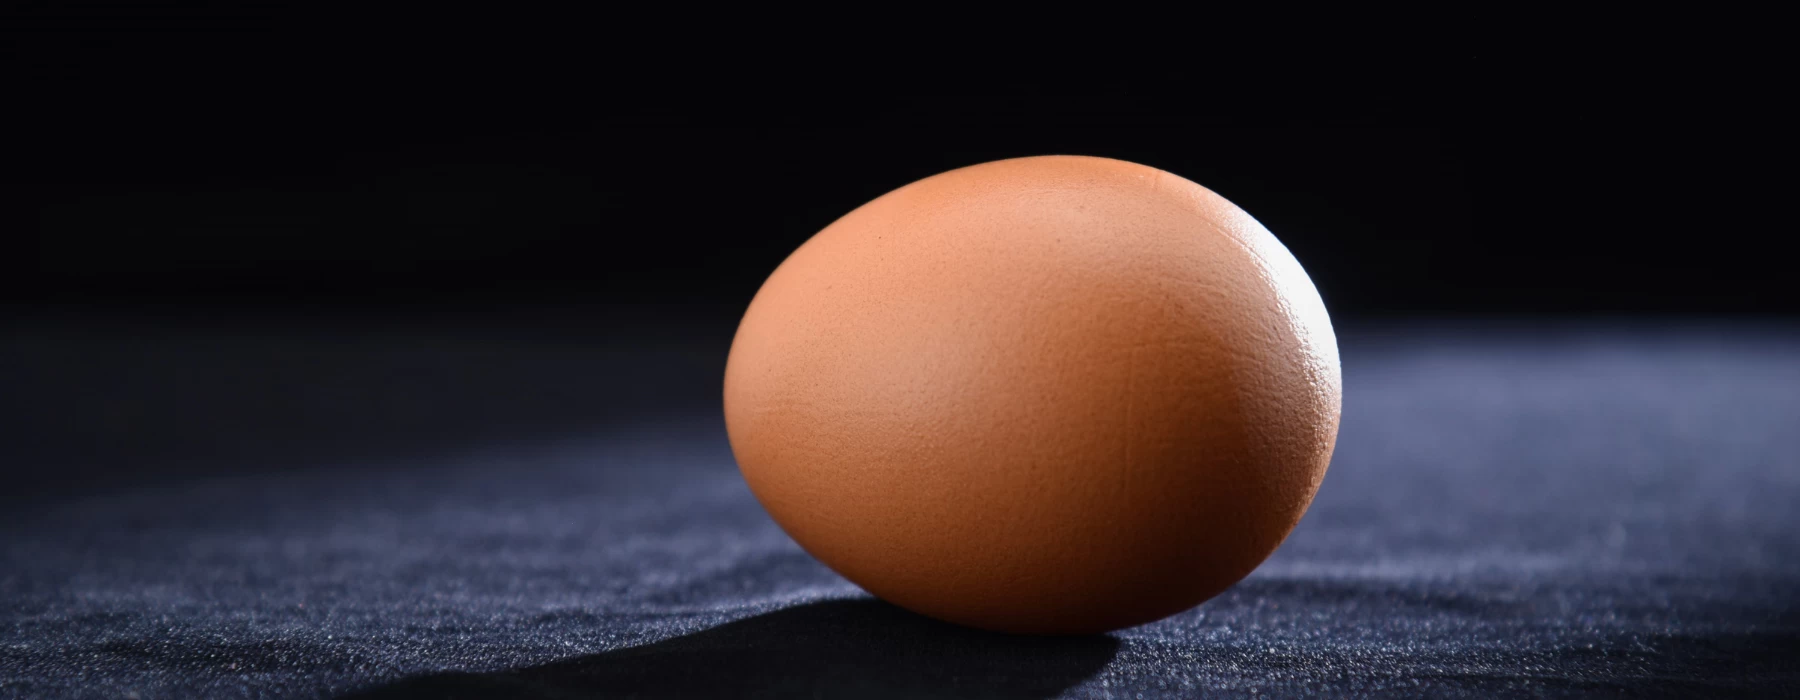 Egg (hen)